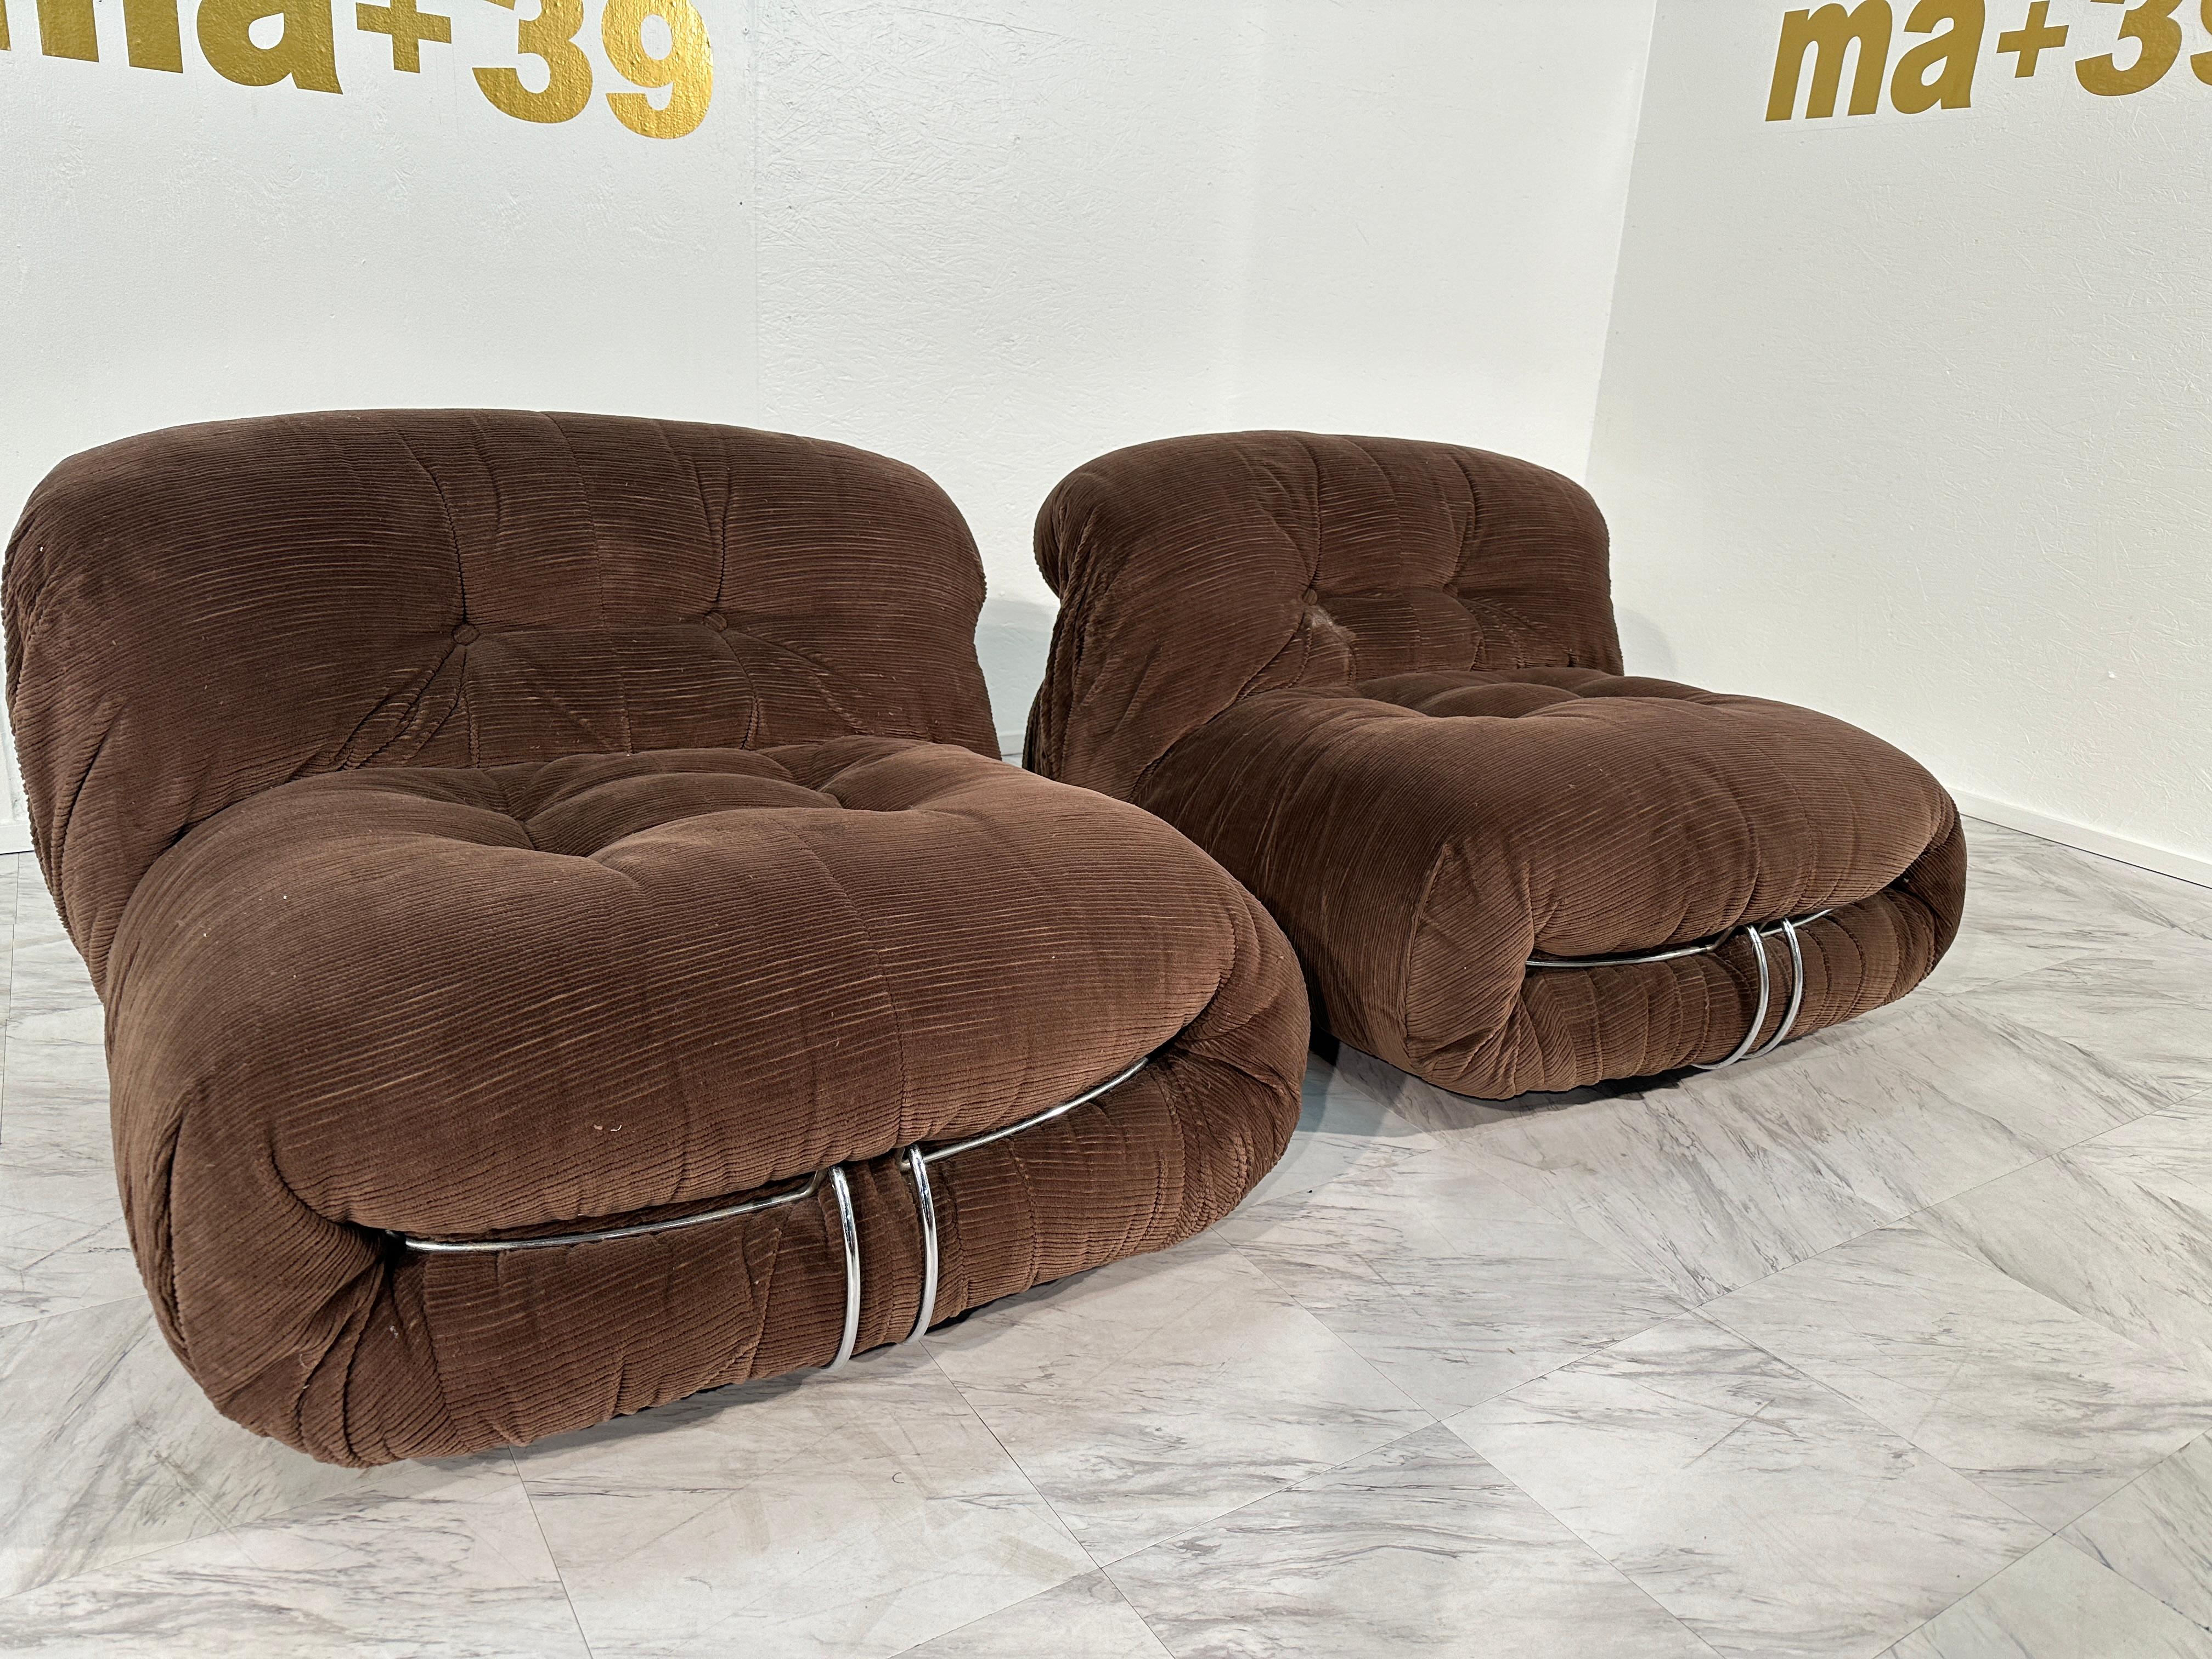 Der Soriana wurde 1970 mit dem Compasso d'Oro ausgezeichnet und verhalf dem italienischen Ehepaar Afra und Tobia Scarpa zu einem sofortigen Erfolg. Gemeinsam entwarfen sie 1968 ein Paar wolkenähnliche Stühle für das entspannte Sitzen. Ein